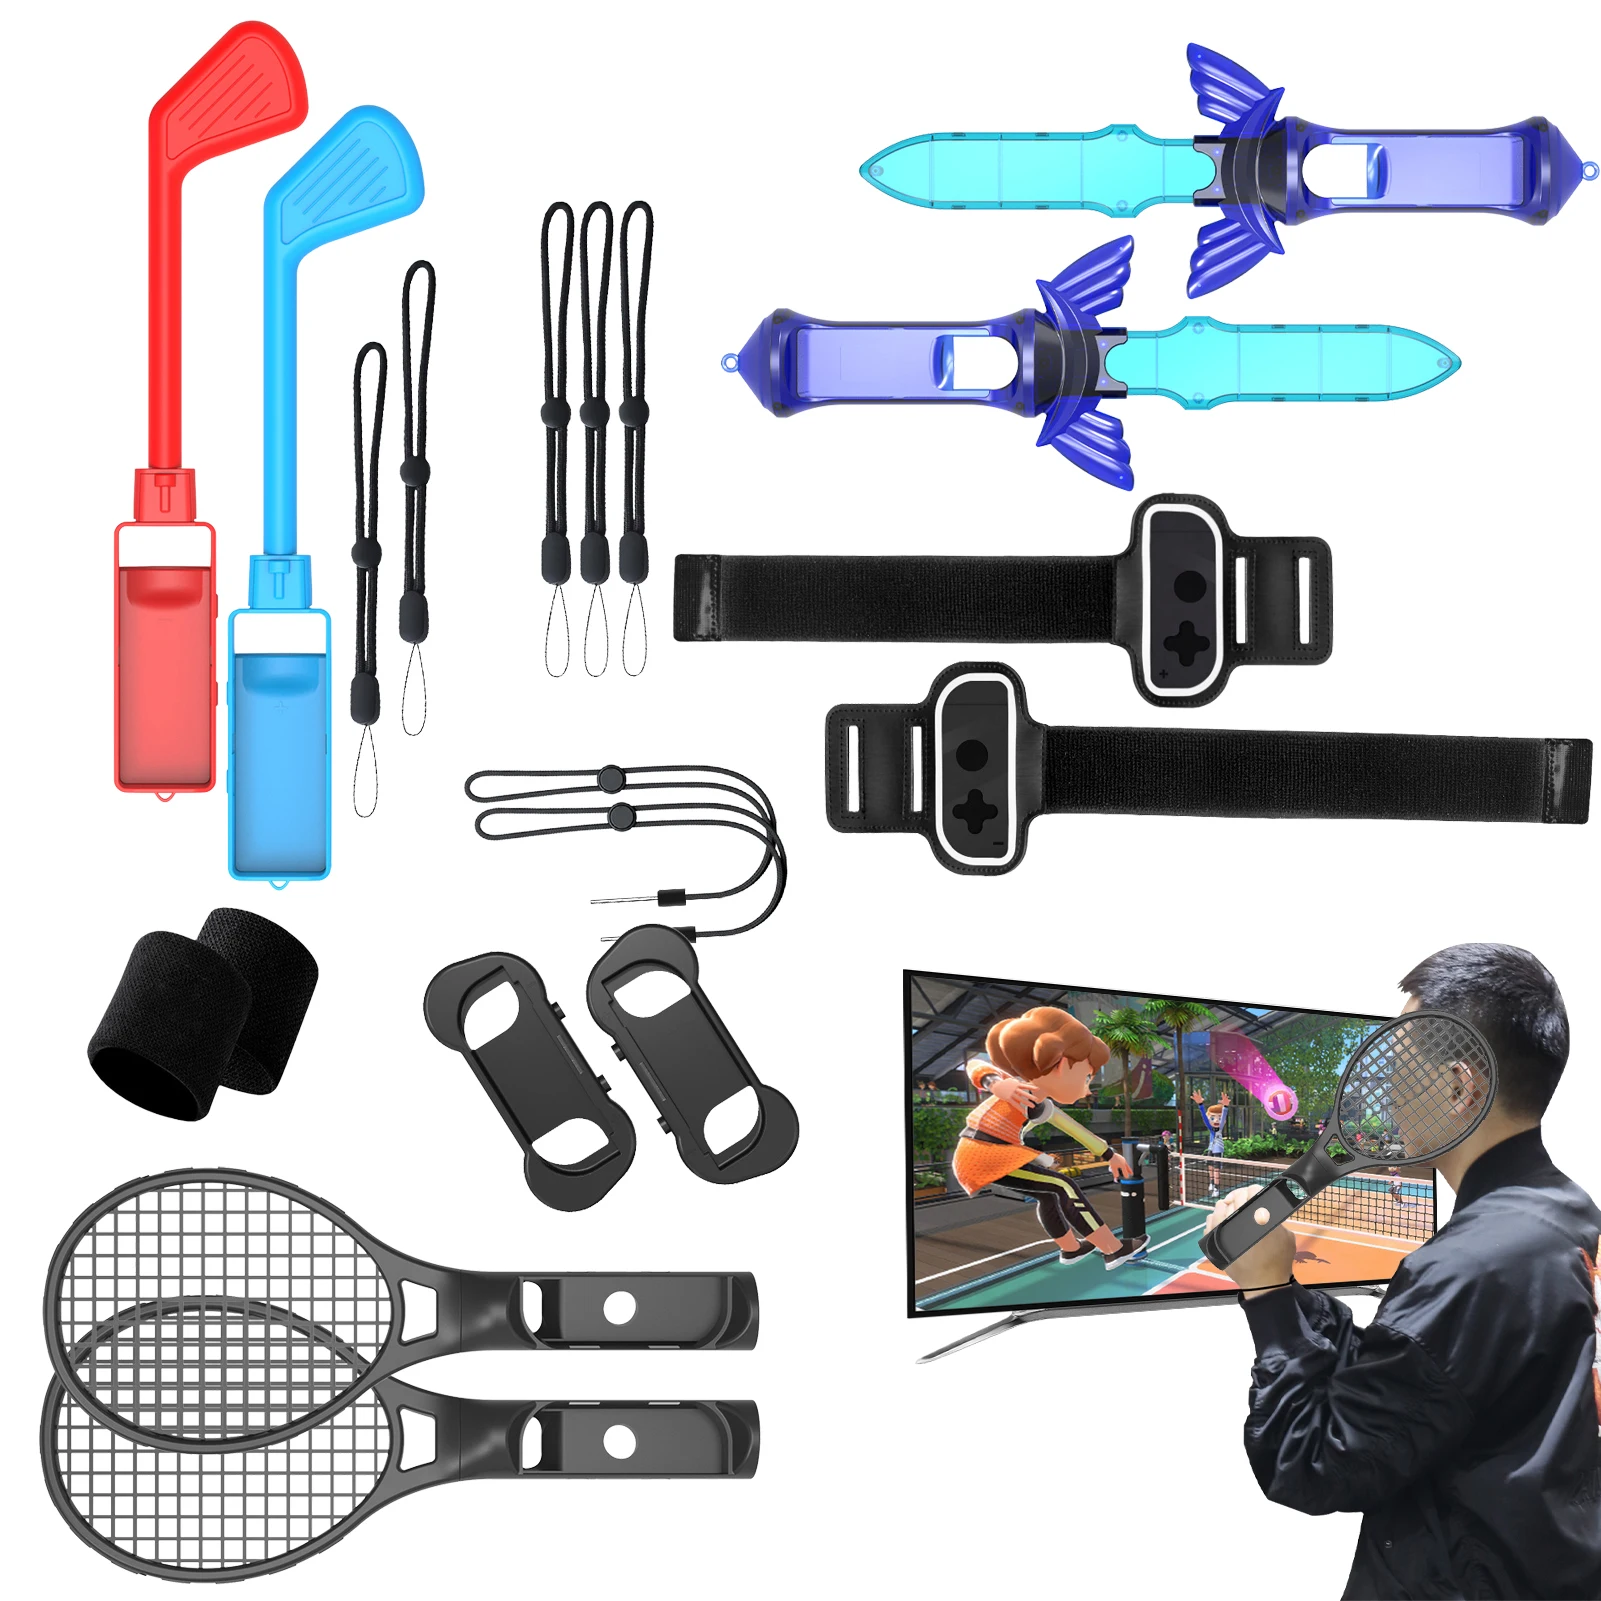 

Комплект спортивных аксессуаров для теннисных ракеток, с ремешками для контроллера